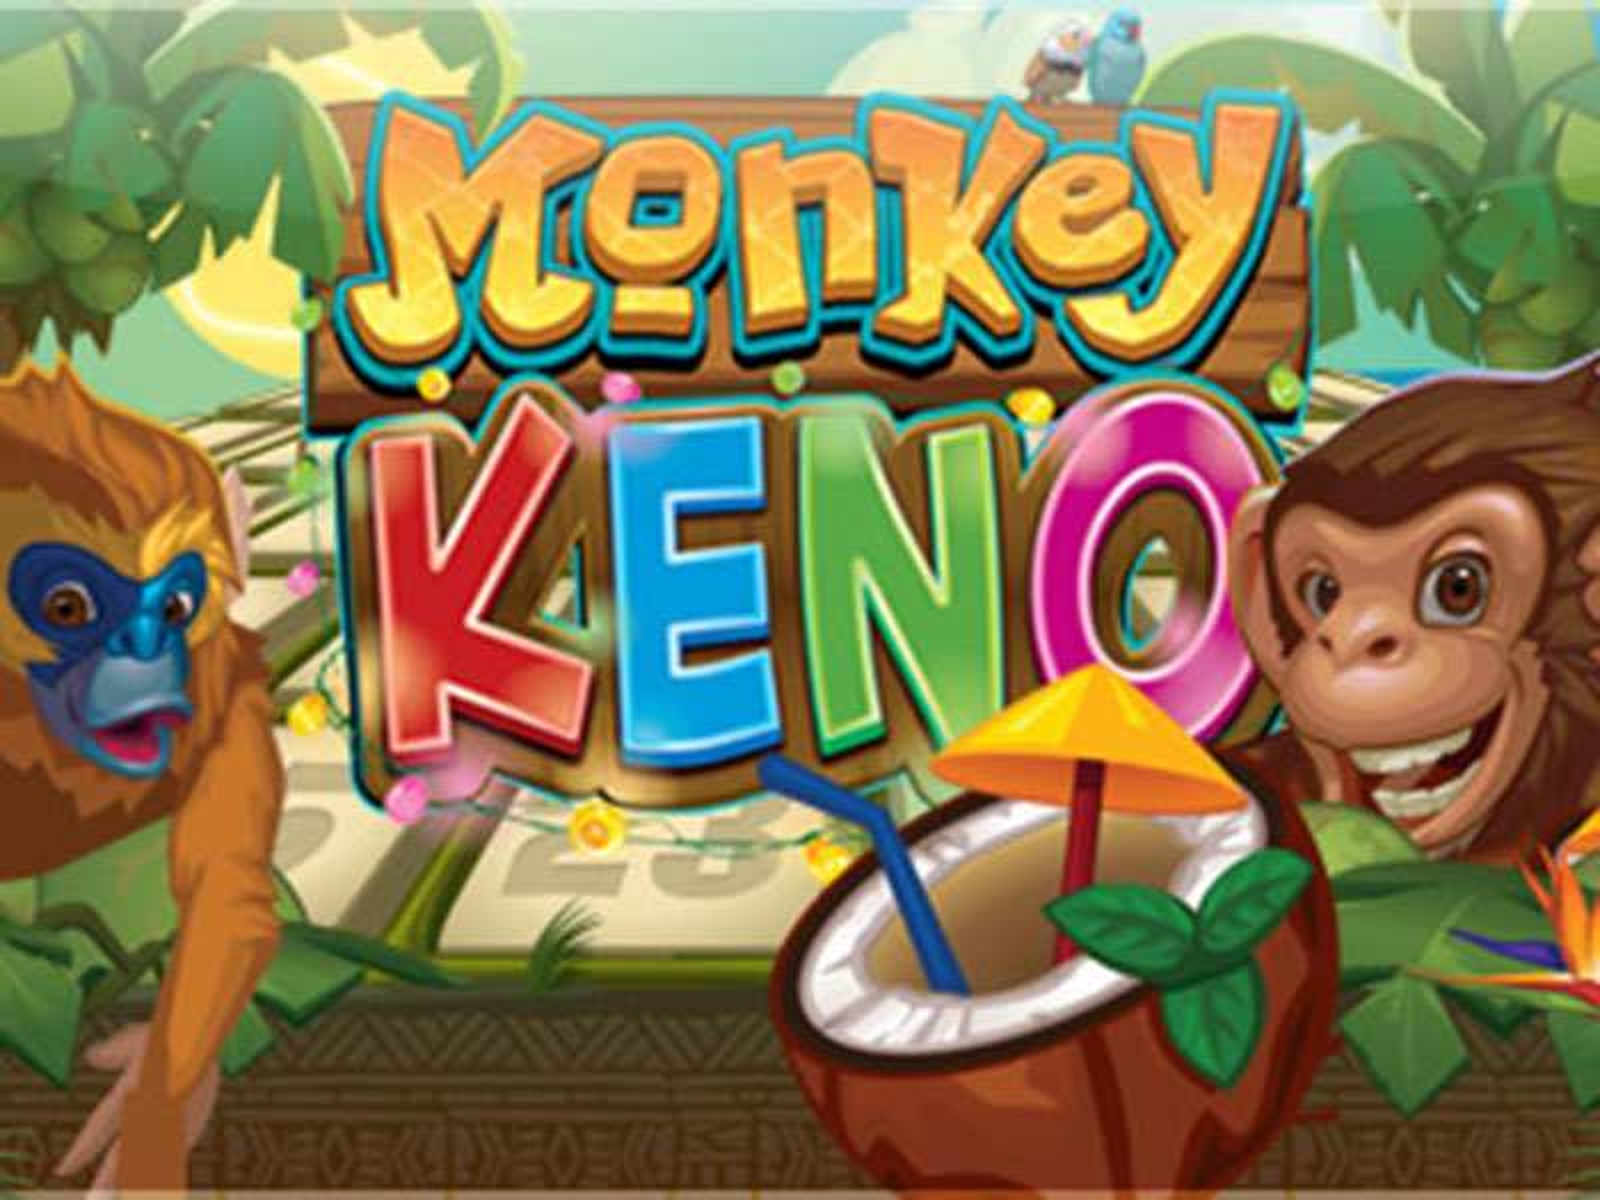 Monkey Keno demo